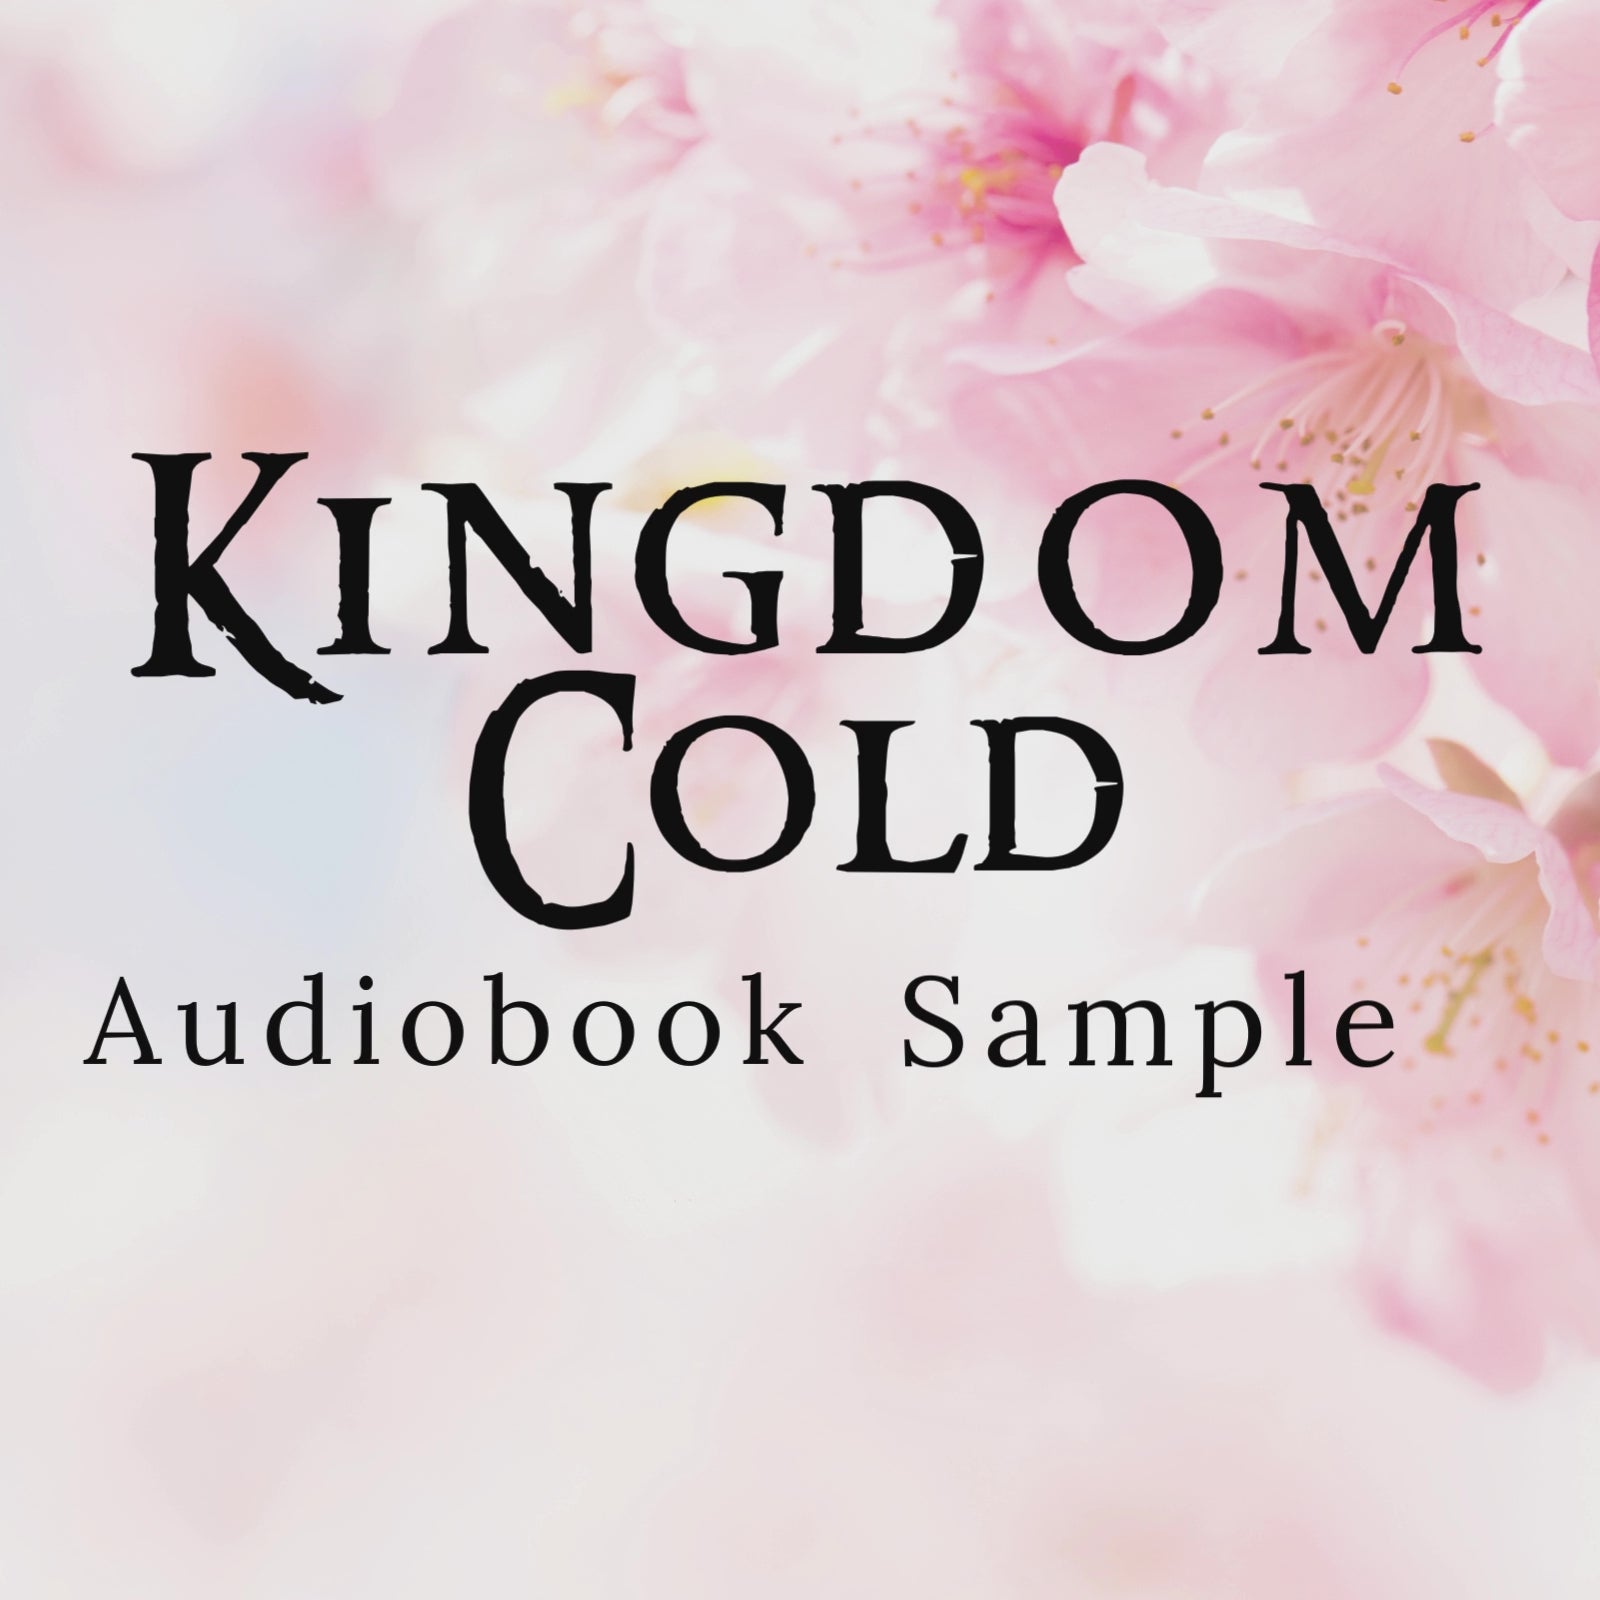 Kingdom Cold by Brittni Chenelle Audiobook Sample A YA Arthurian Romantasy